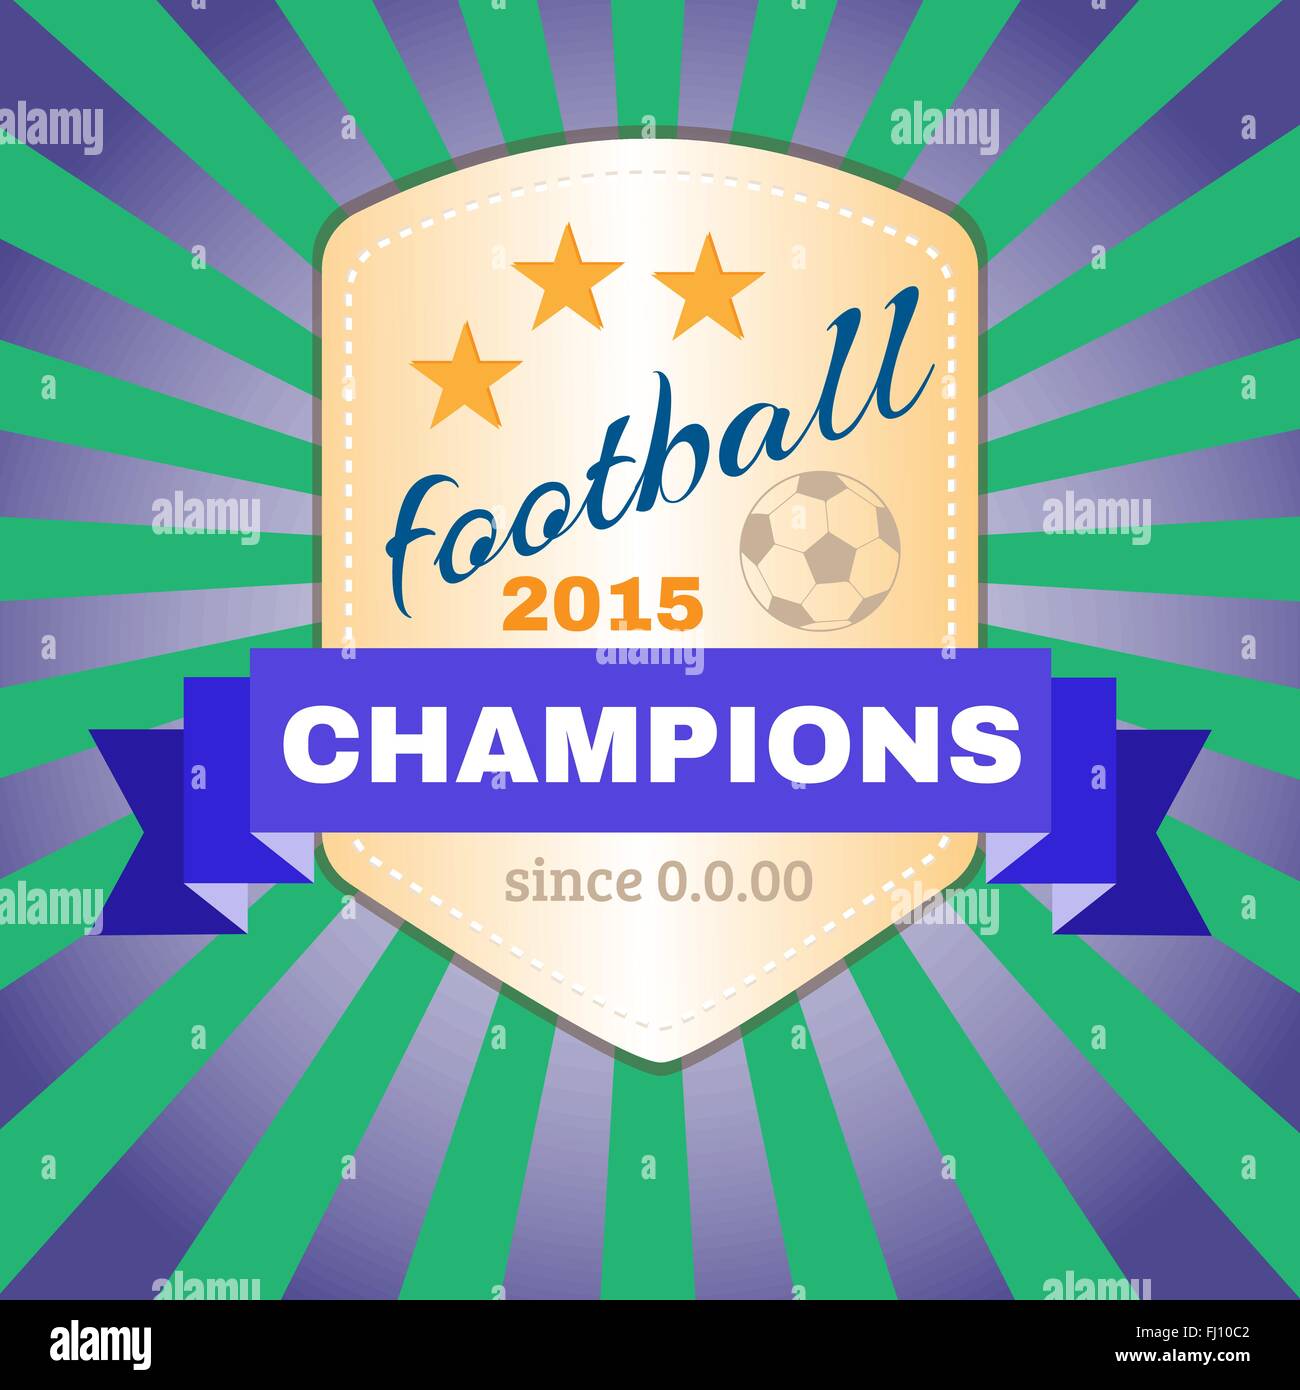 Soccer Football Champions 2015 Insigne campagne publicitaire. Graphiques de promotion du sport. Illustration vecteur de fond numérique. Illustration de Vecteur